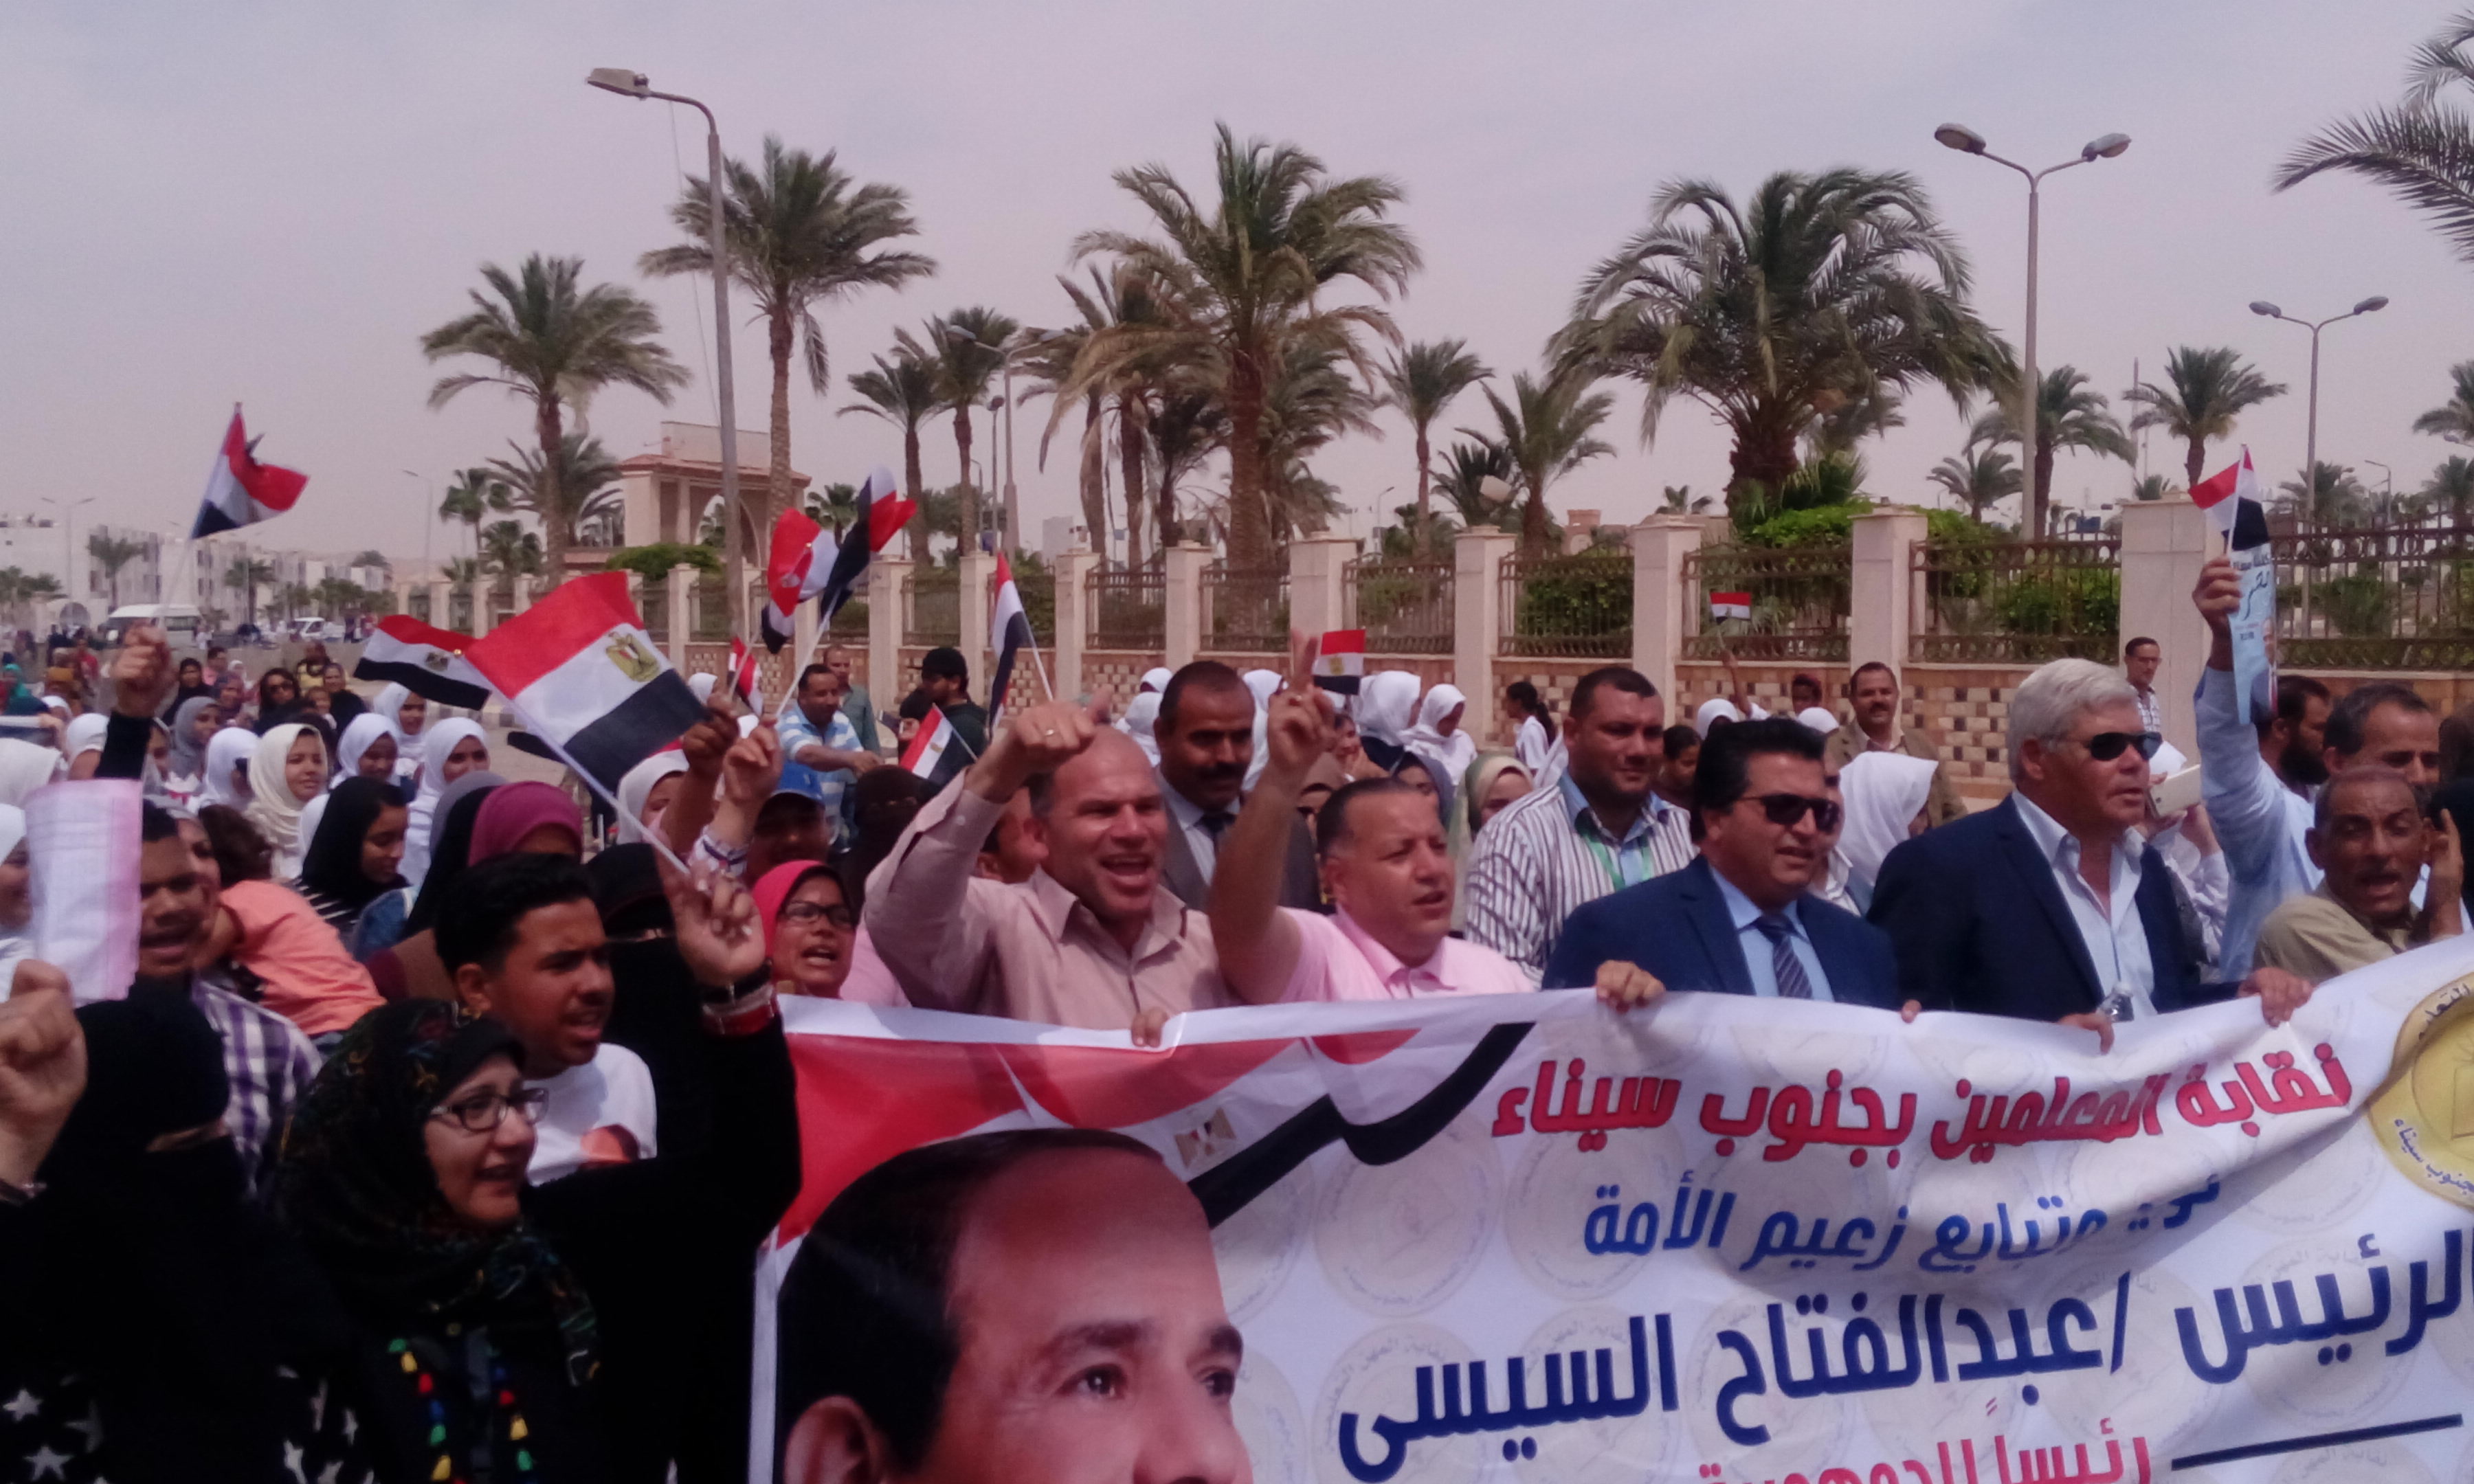  محمد عقل وكيل وزارة التربية والتعليم وفوزى همام رئيس مدينة طور سيناء والمعلمين فى المسيرة